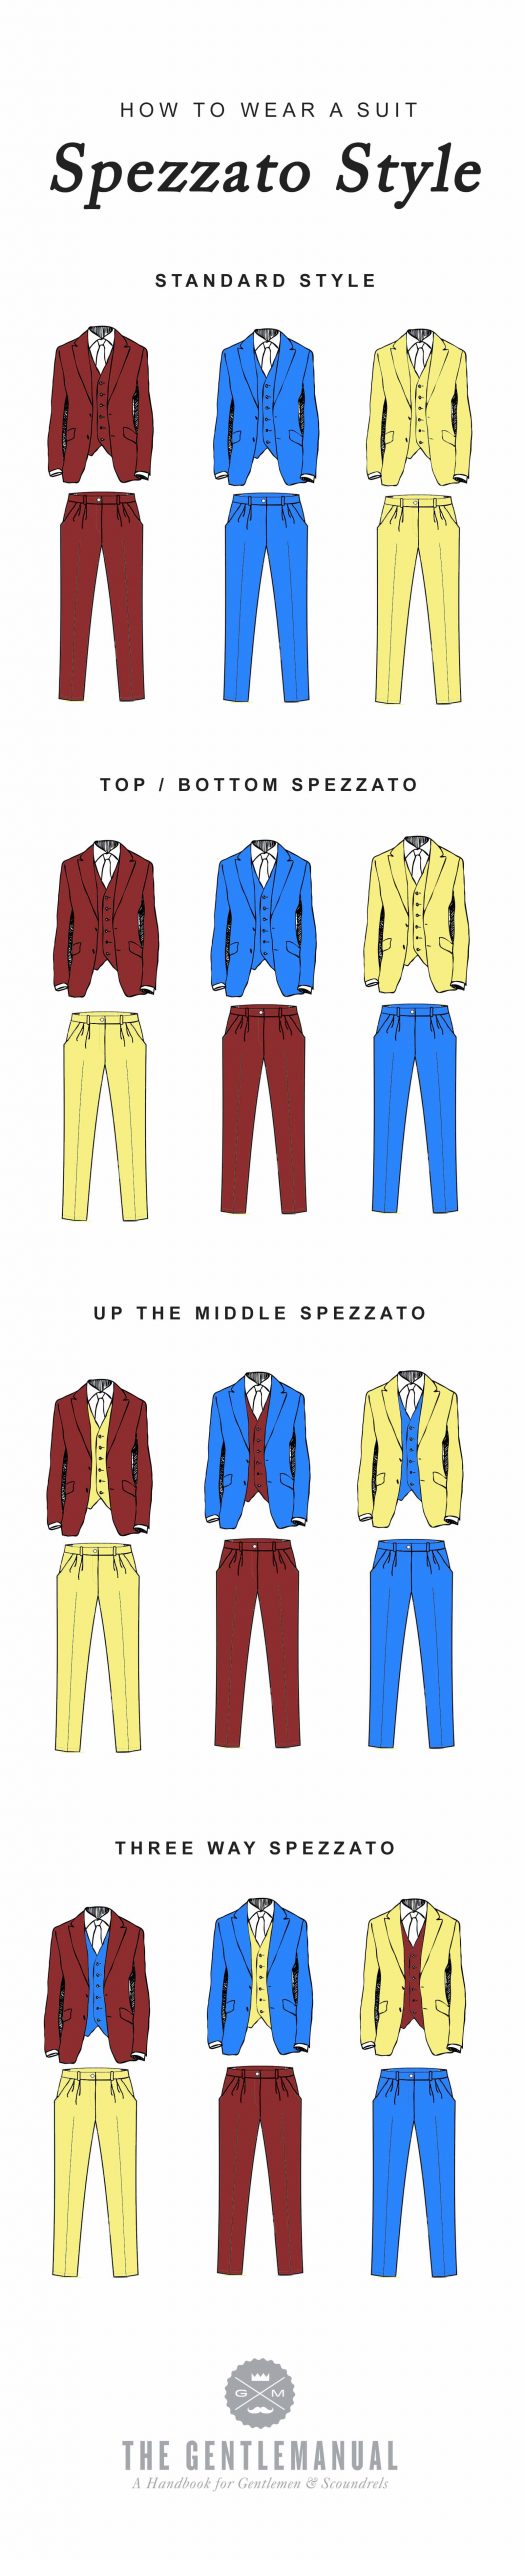 spezzato style suit infographic